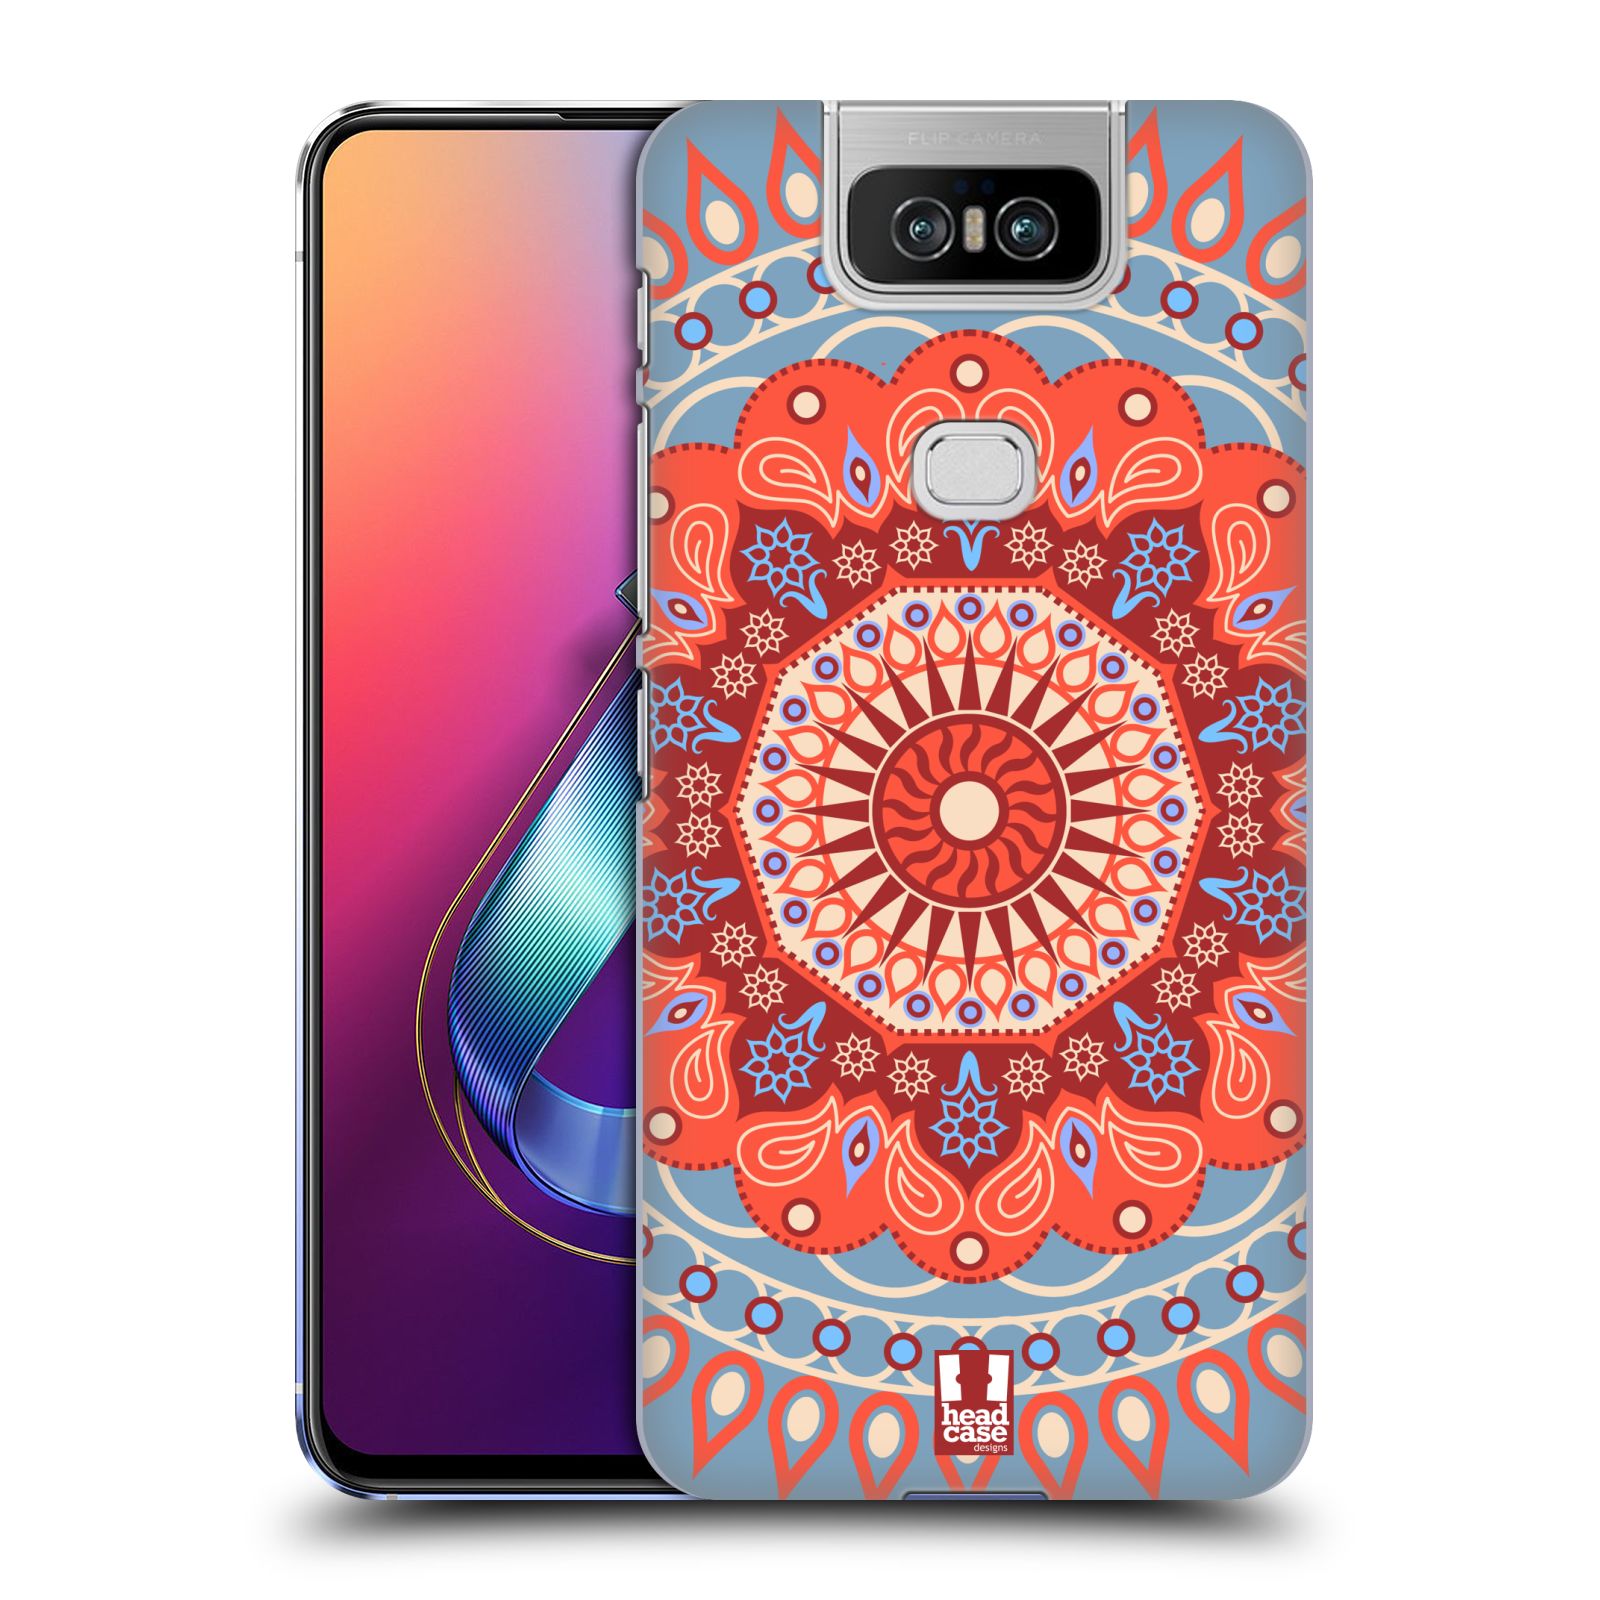 Pouzdro na mobil Asus Zenfone 6 ZS630KL - HEAD CASE - vzor Indie Mandala slunce barevný motiv ČERVENÁ A MODRÁ